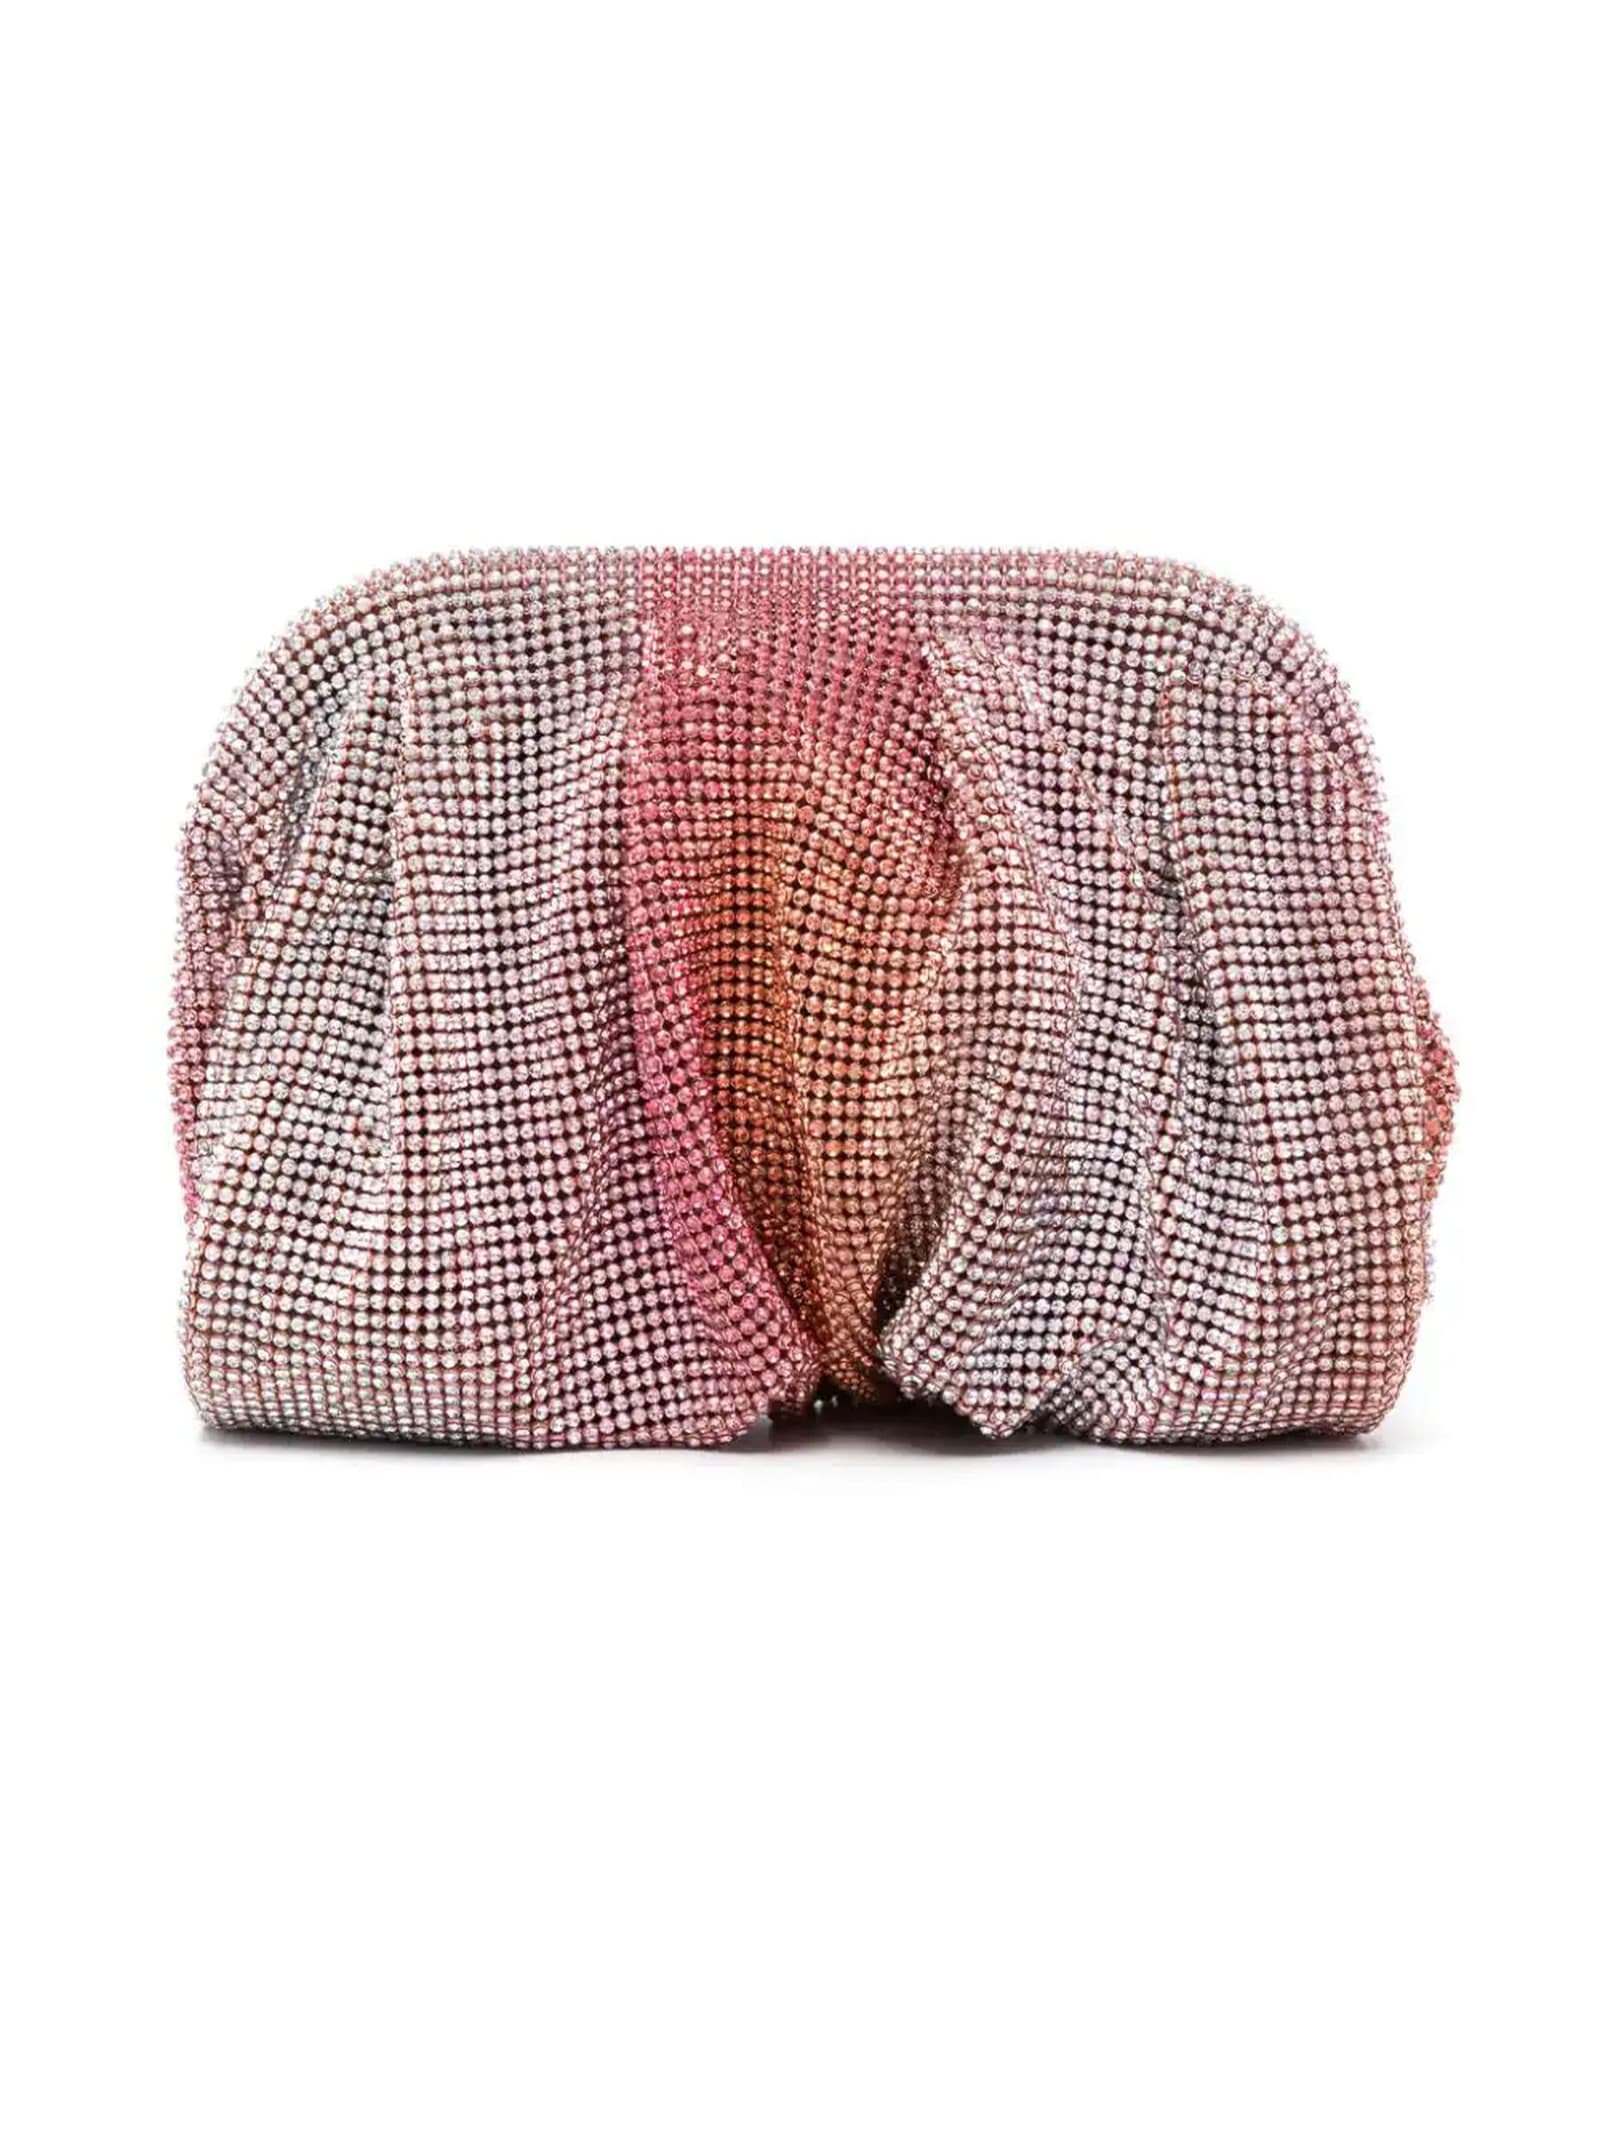 Shop Benedetta Bruzziches Raspberry Pink Venus Petite Crystal Clutch Bag